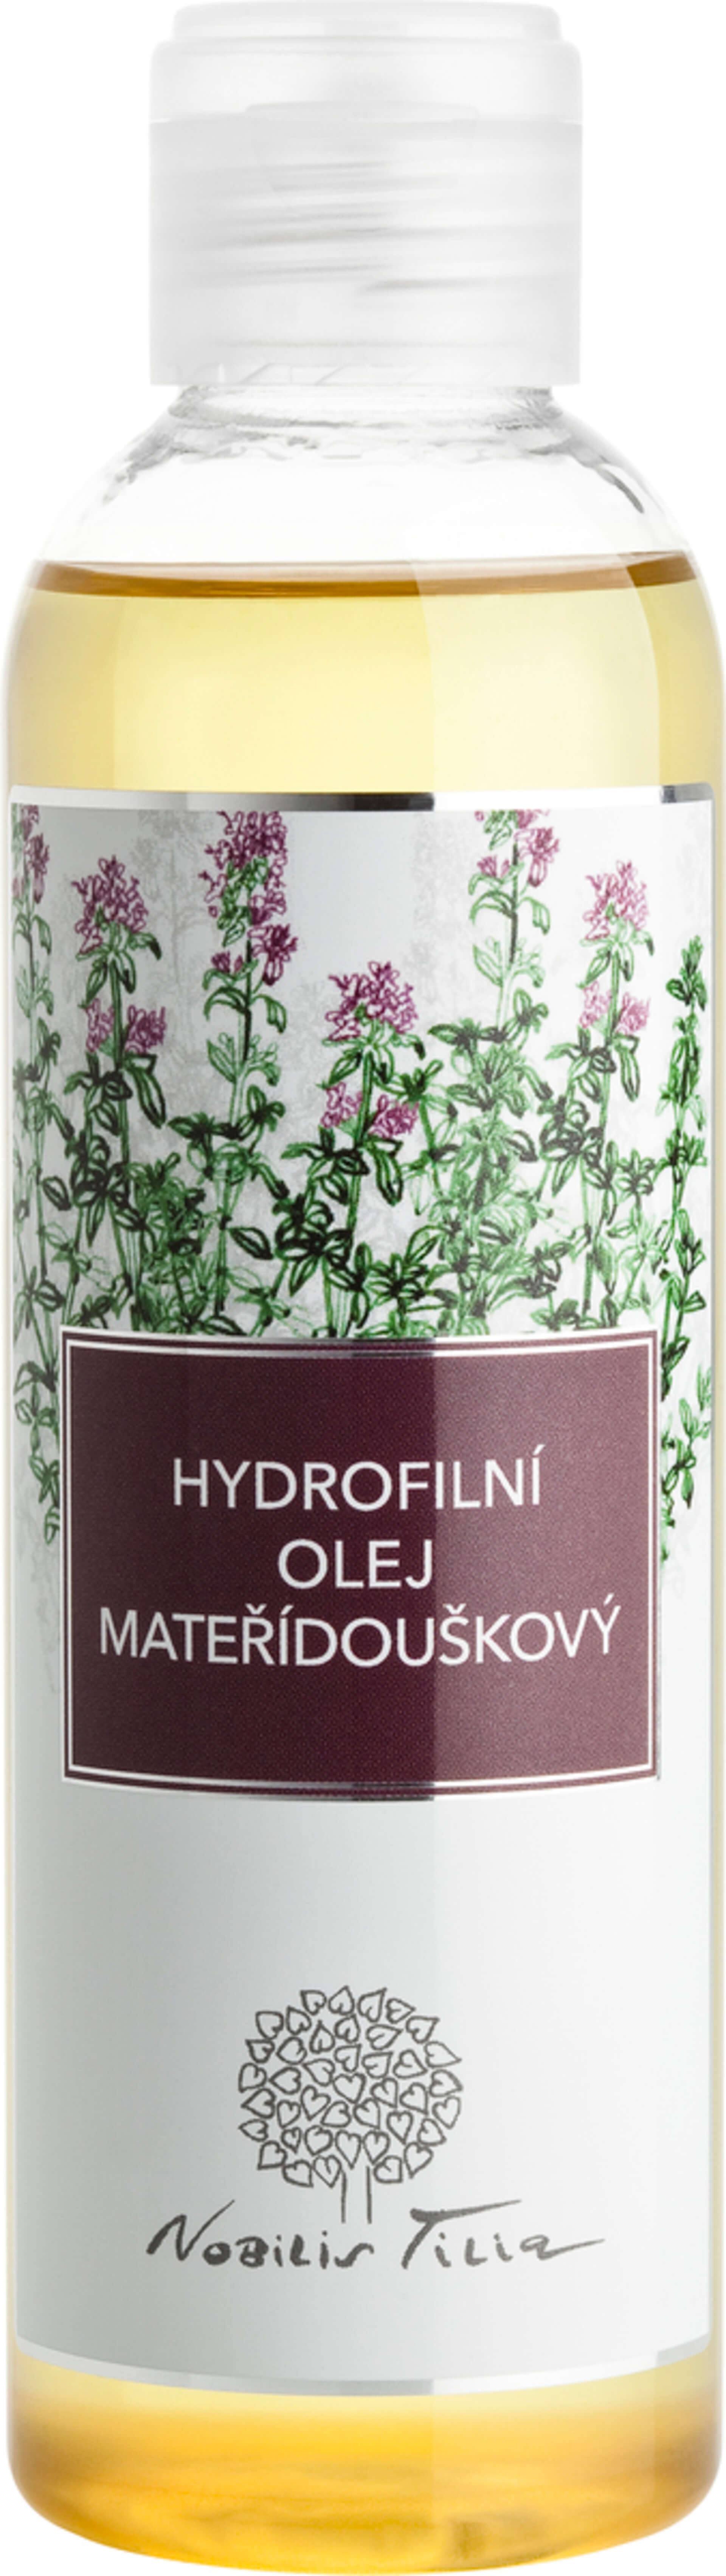 Nobilis Tilia Hydrofilní olej Mateřídouškový 200 ml